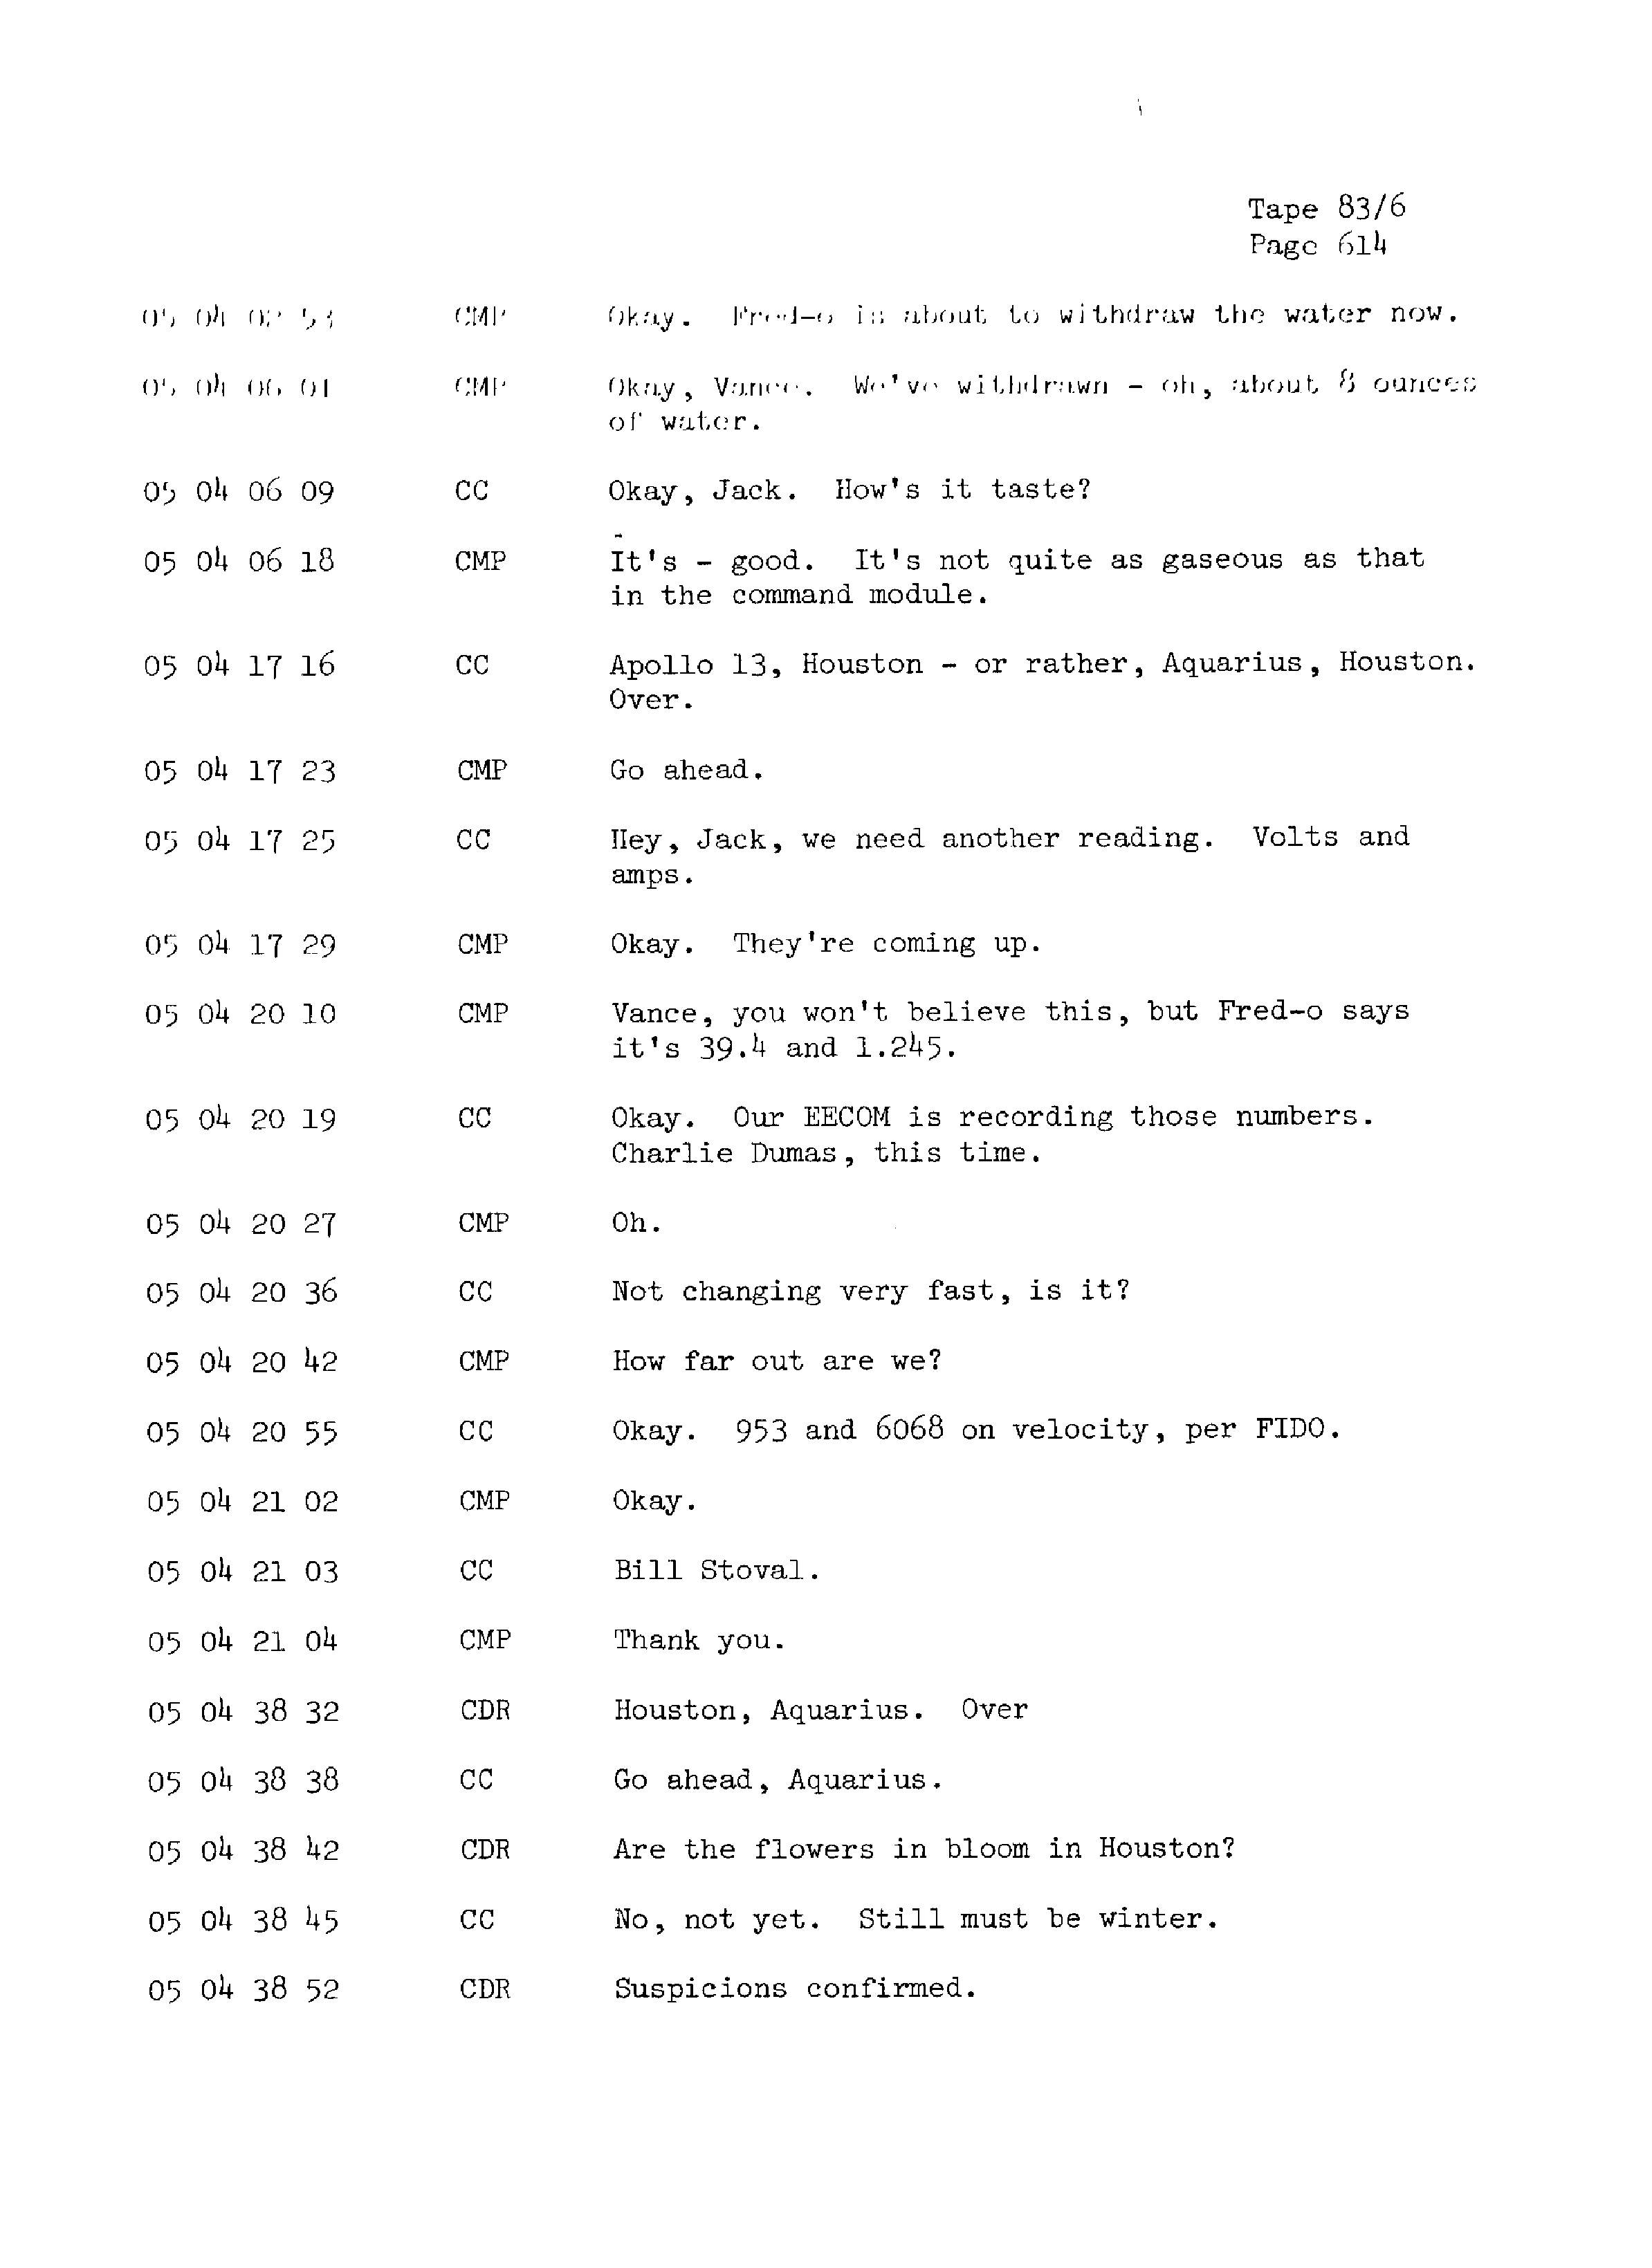 Page 621 of Apollo 13’s original transcript